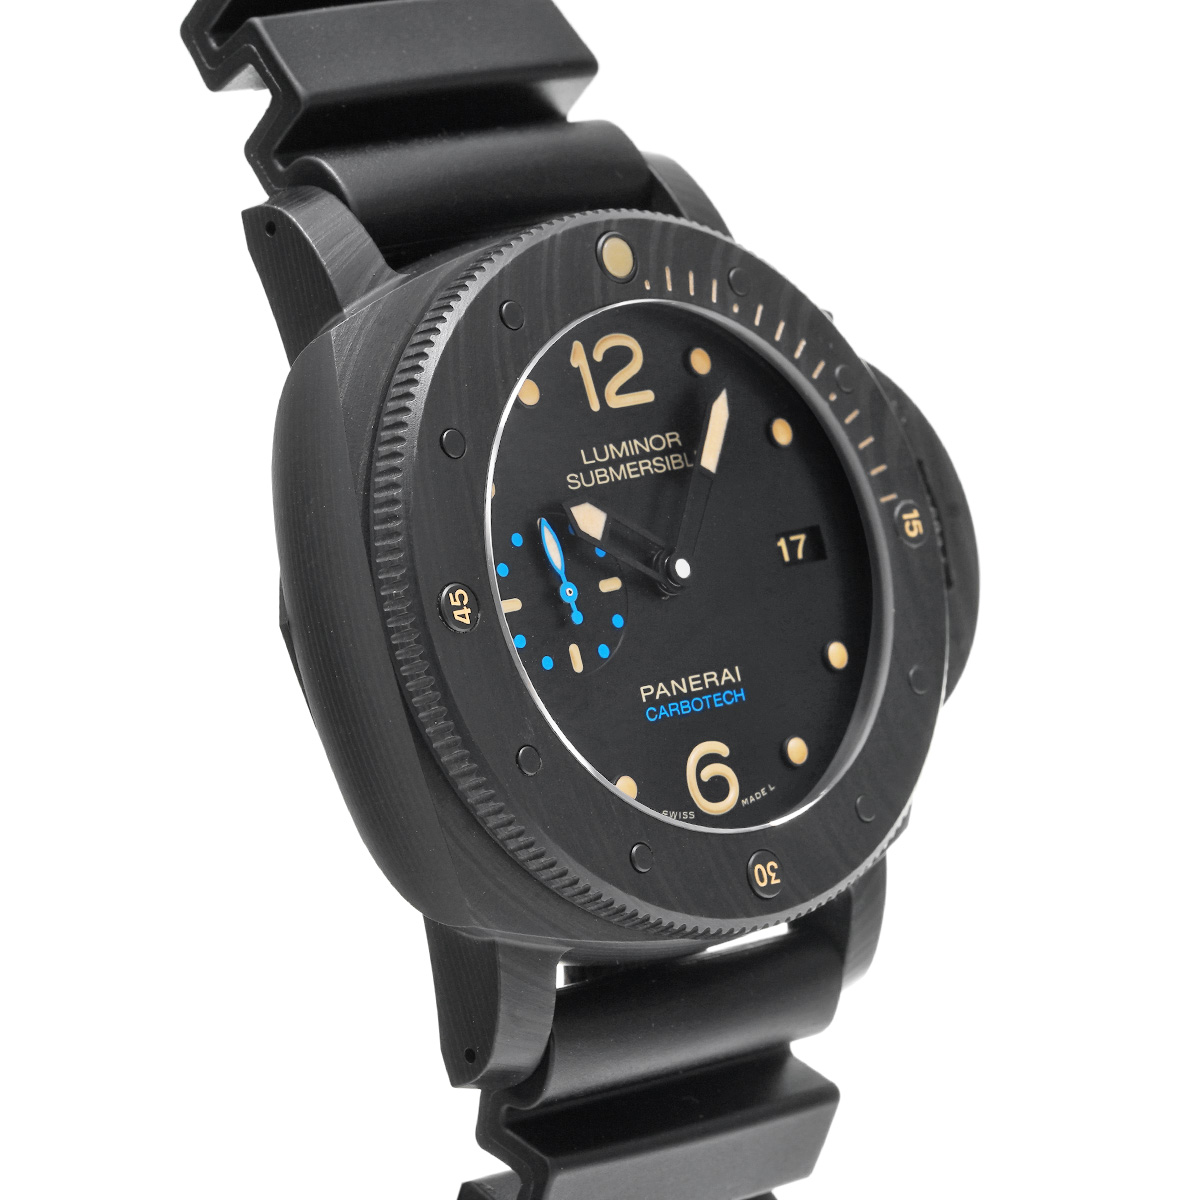 パネライ サブマーシブル カーボテック 3デイズ オートマティック PAM00616 ブラック メンズ 時計 【中古】【wristwatch】